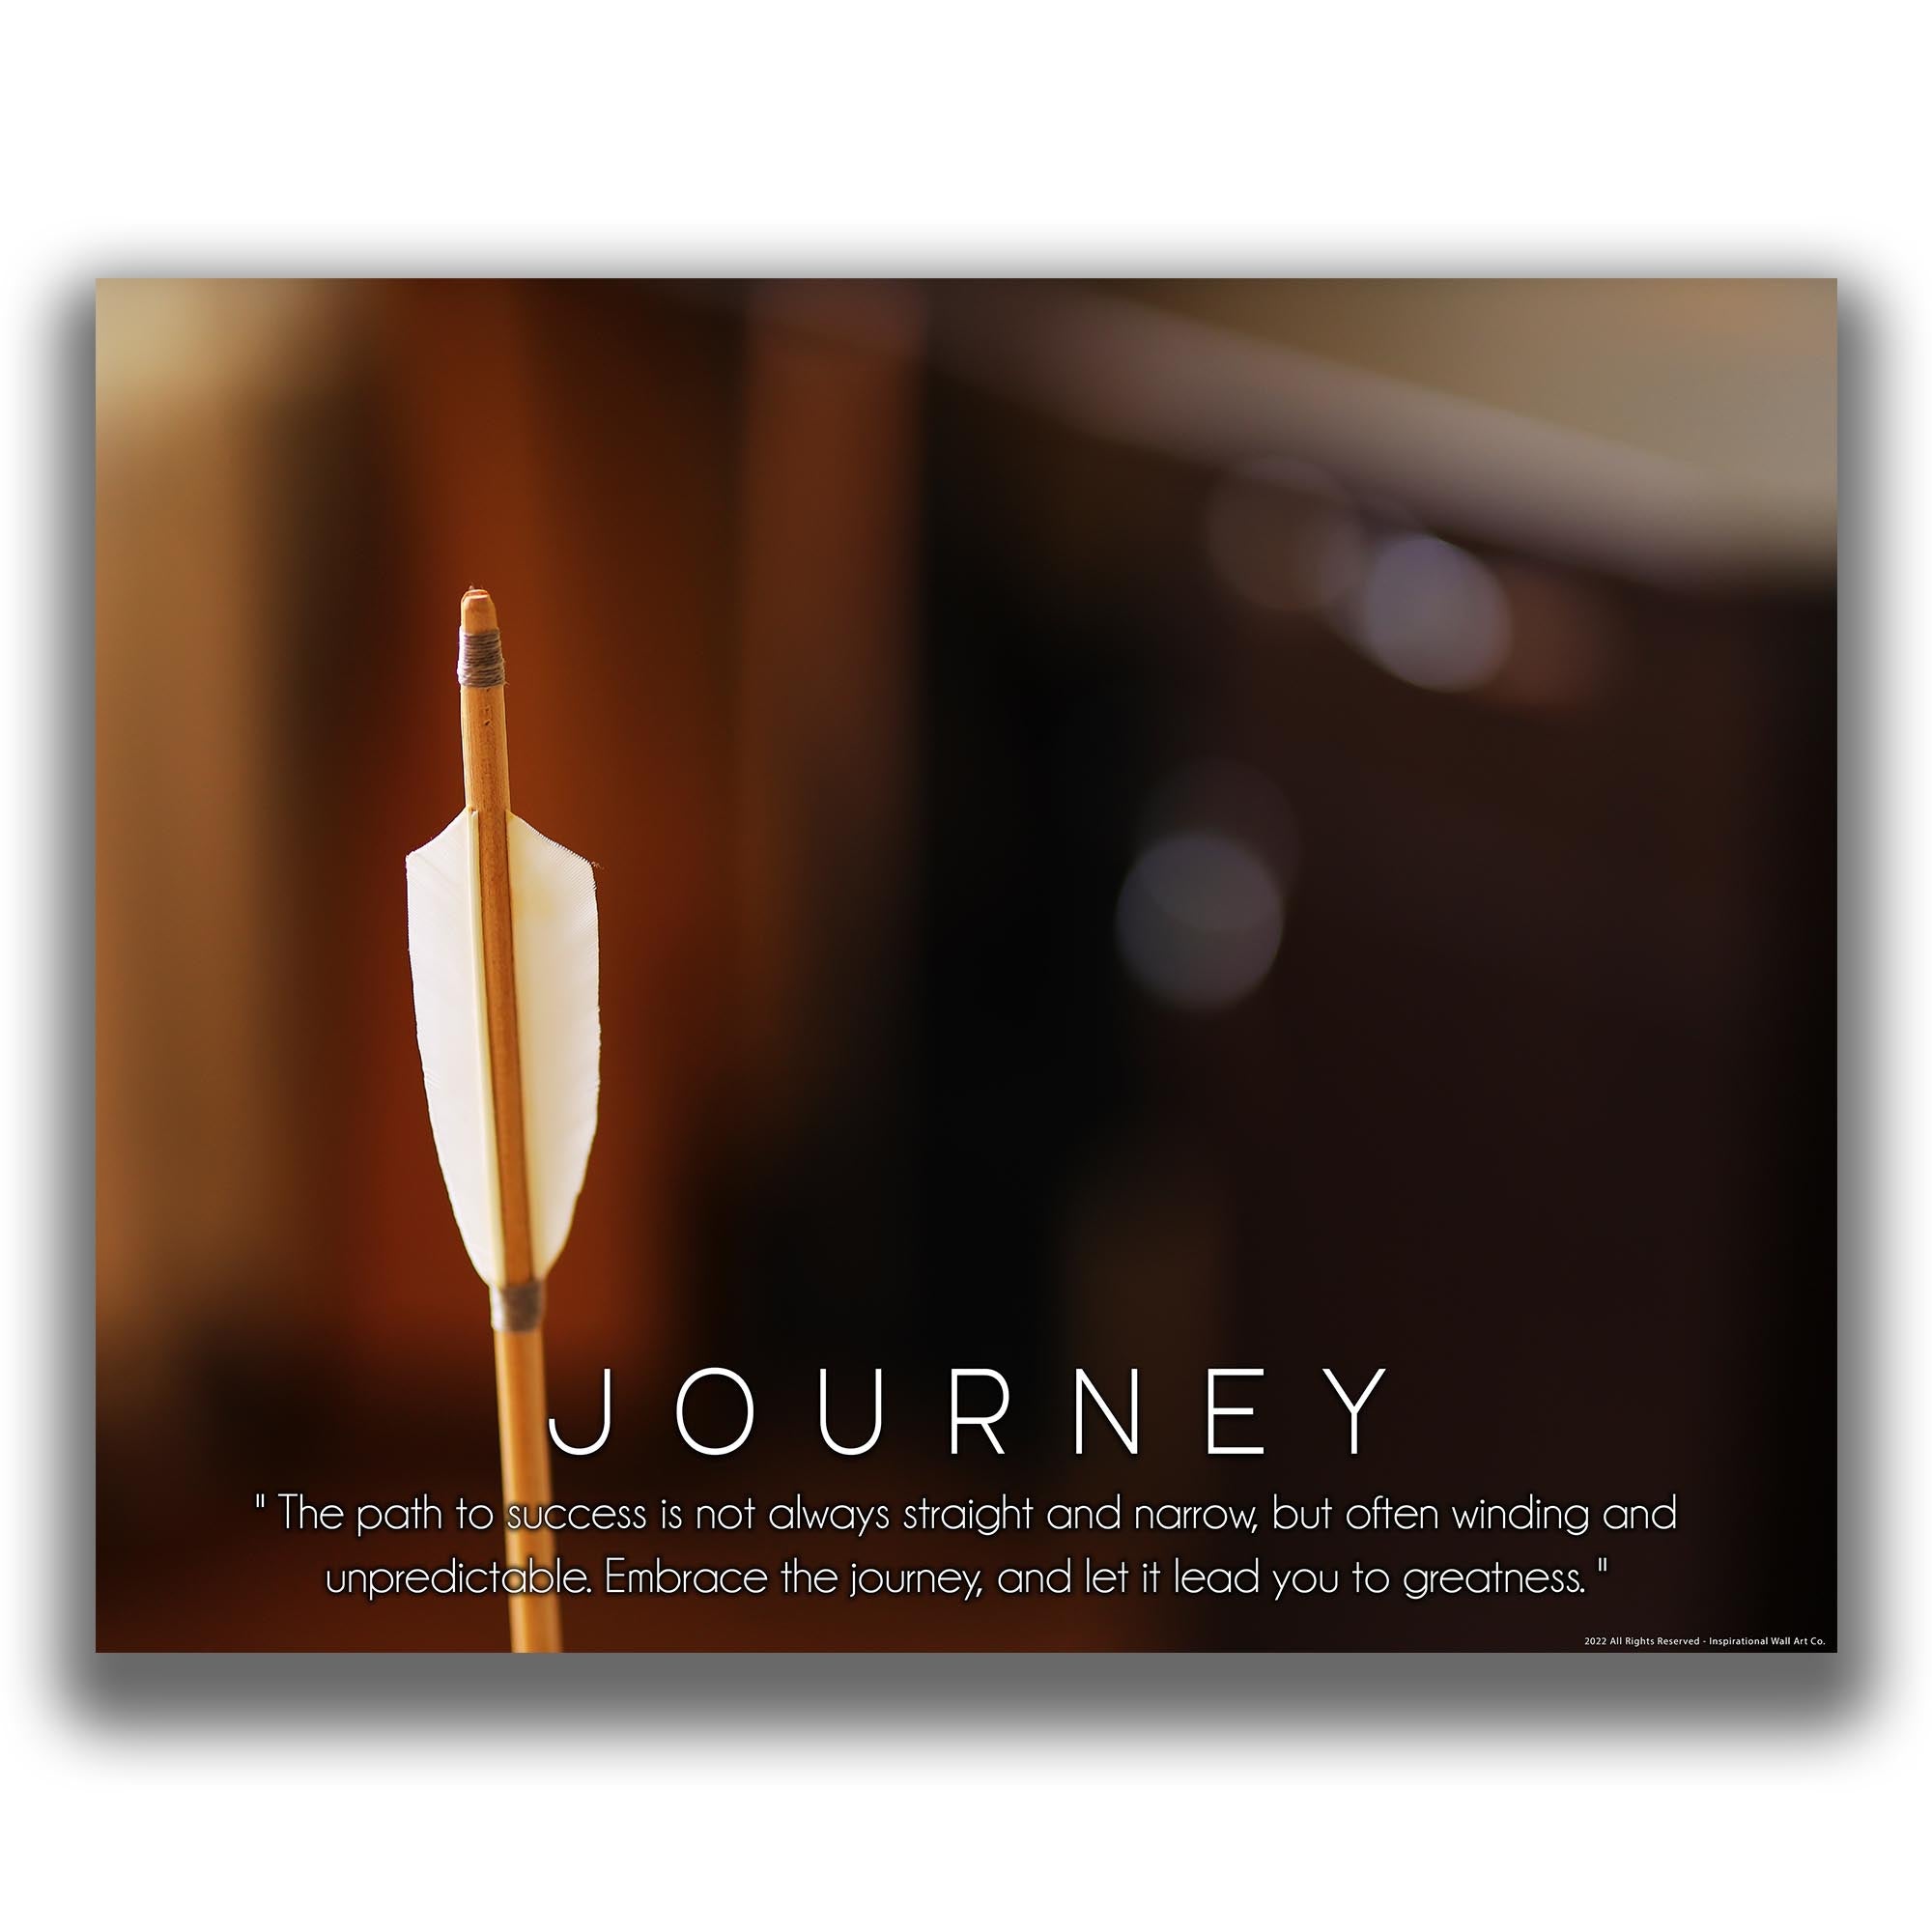 Journey - Archery Poster